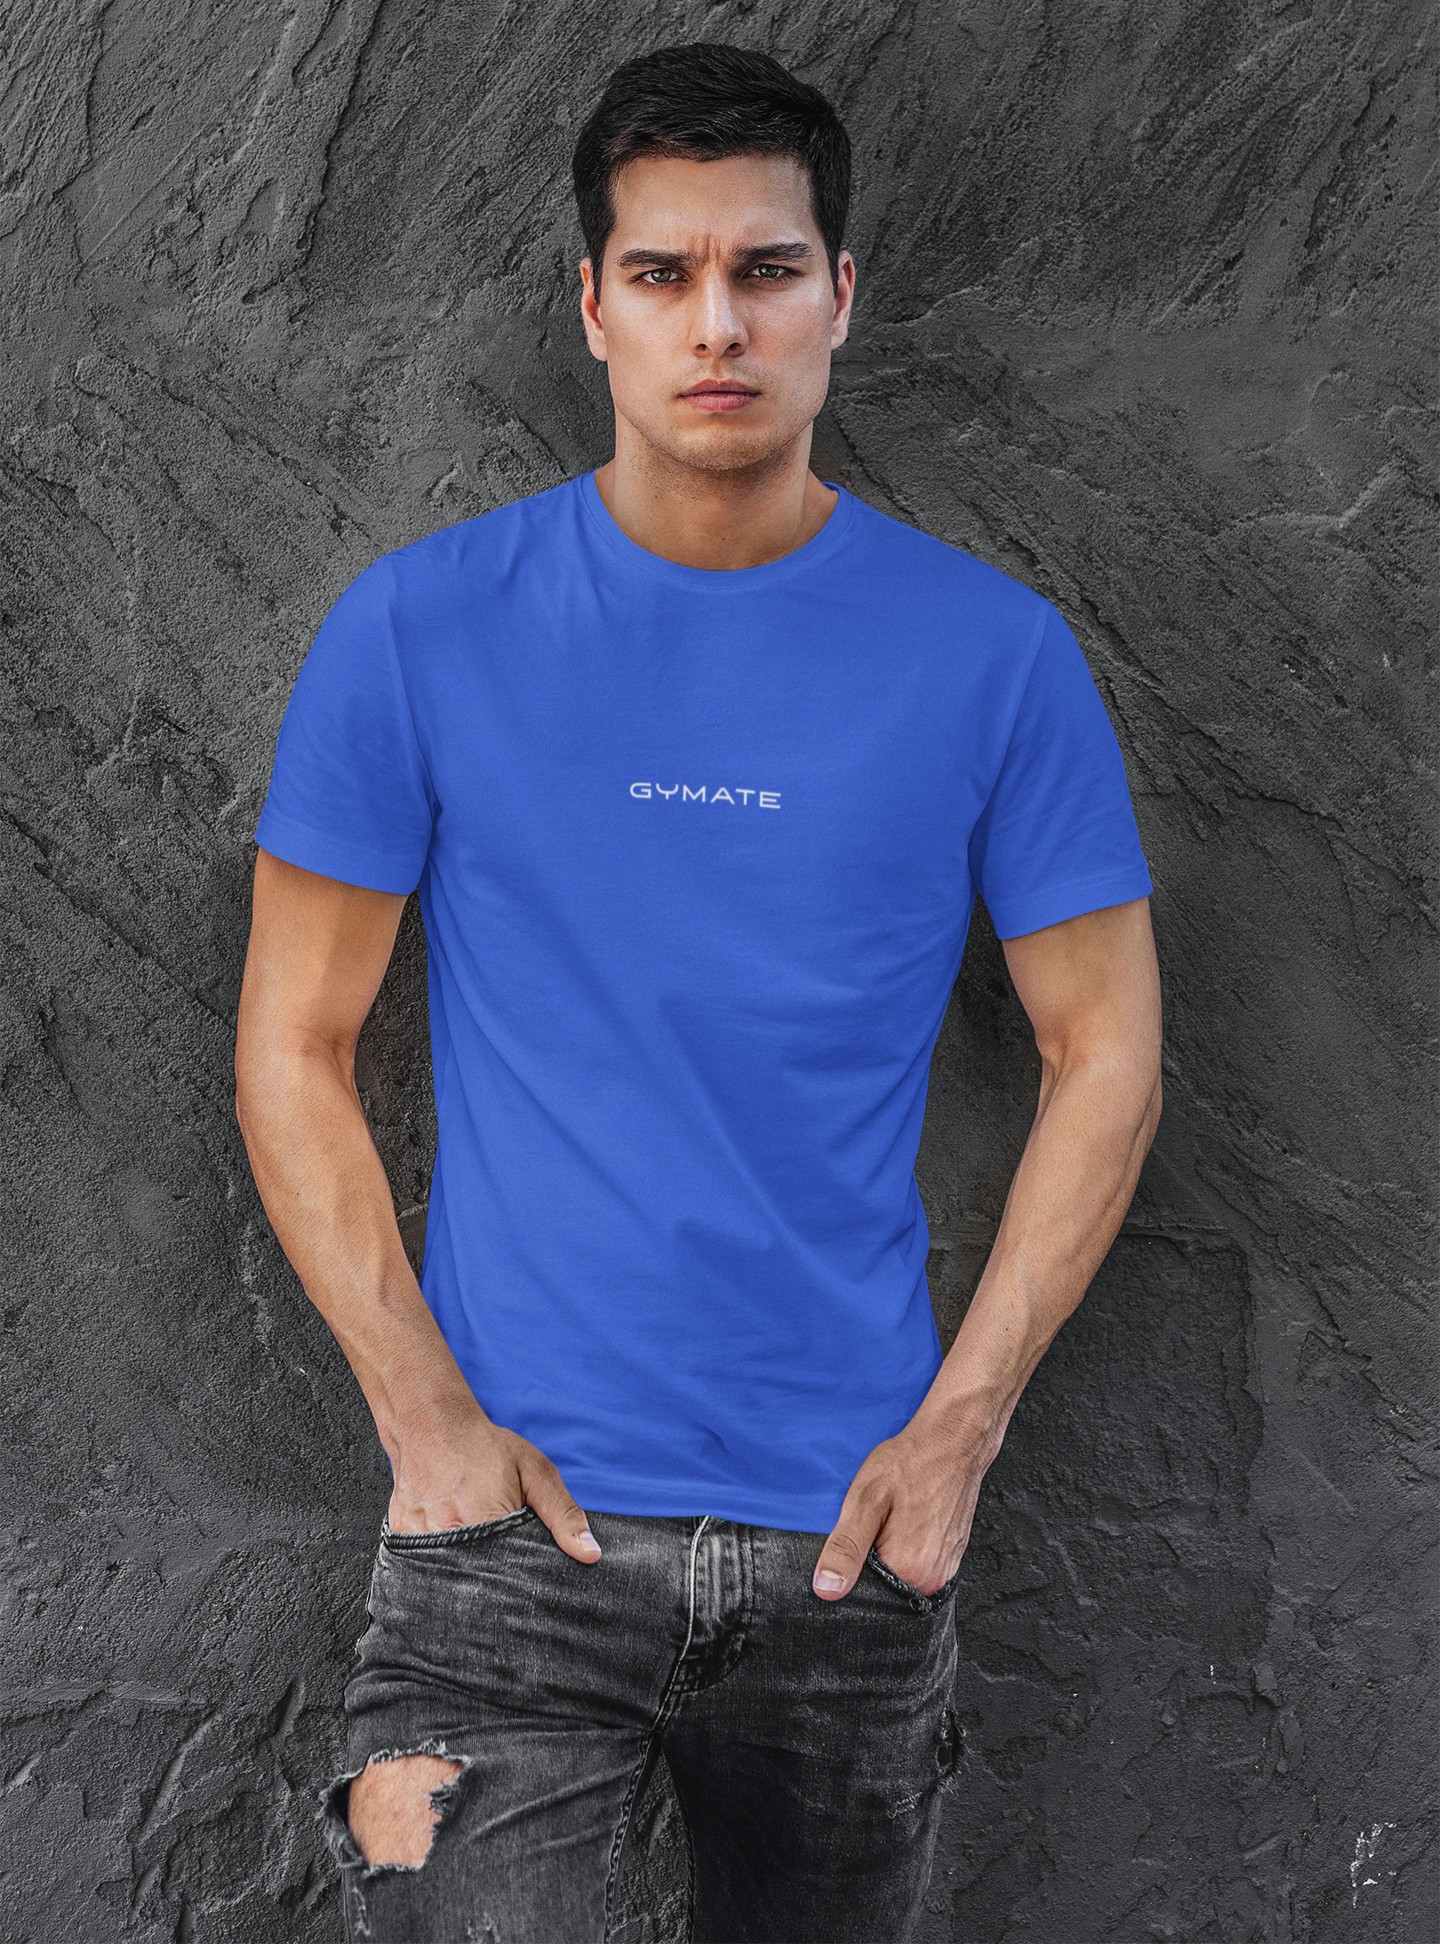 Designer mens T shirts Original Gymate sml/ctr royal blue